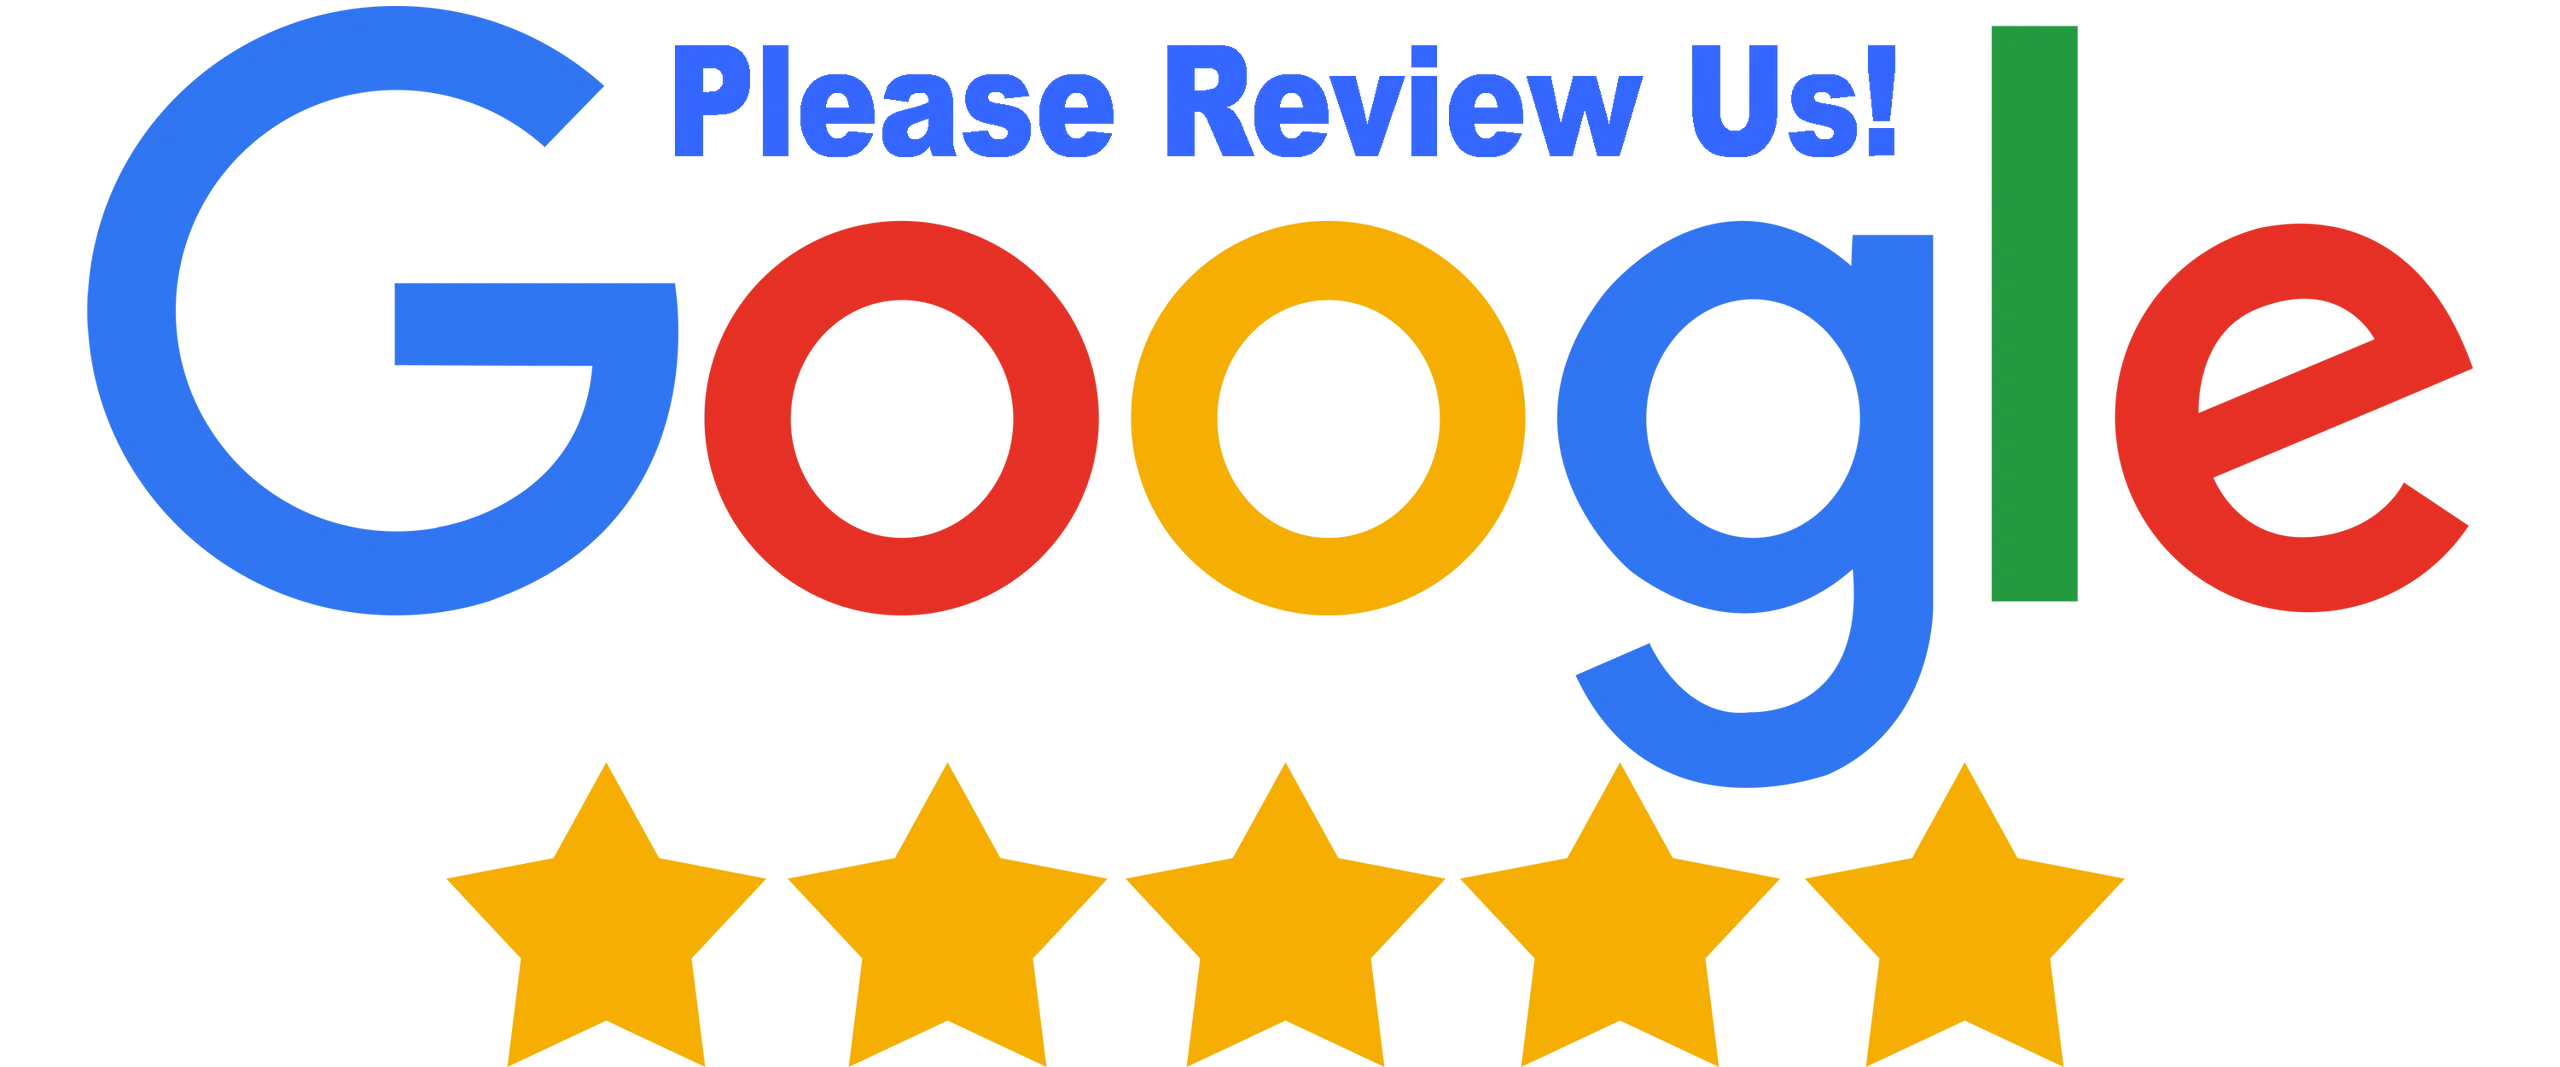 Google_Review_Logo